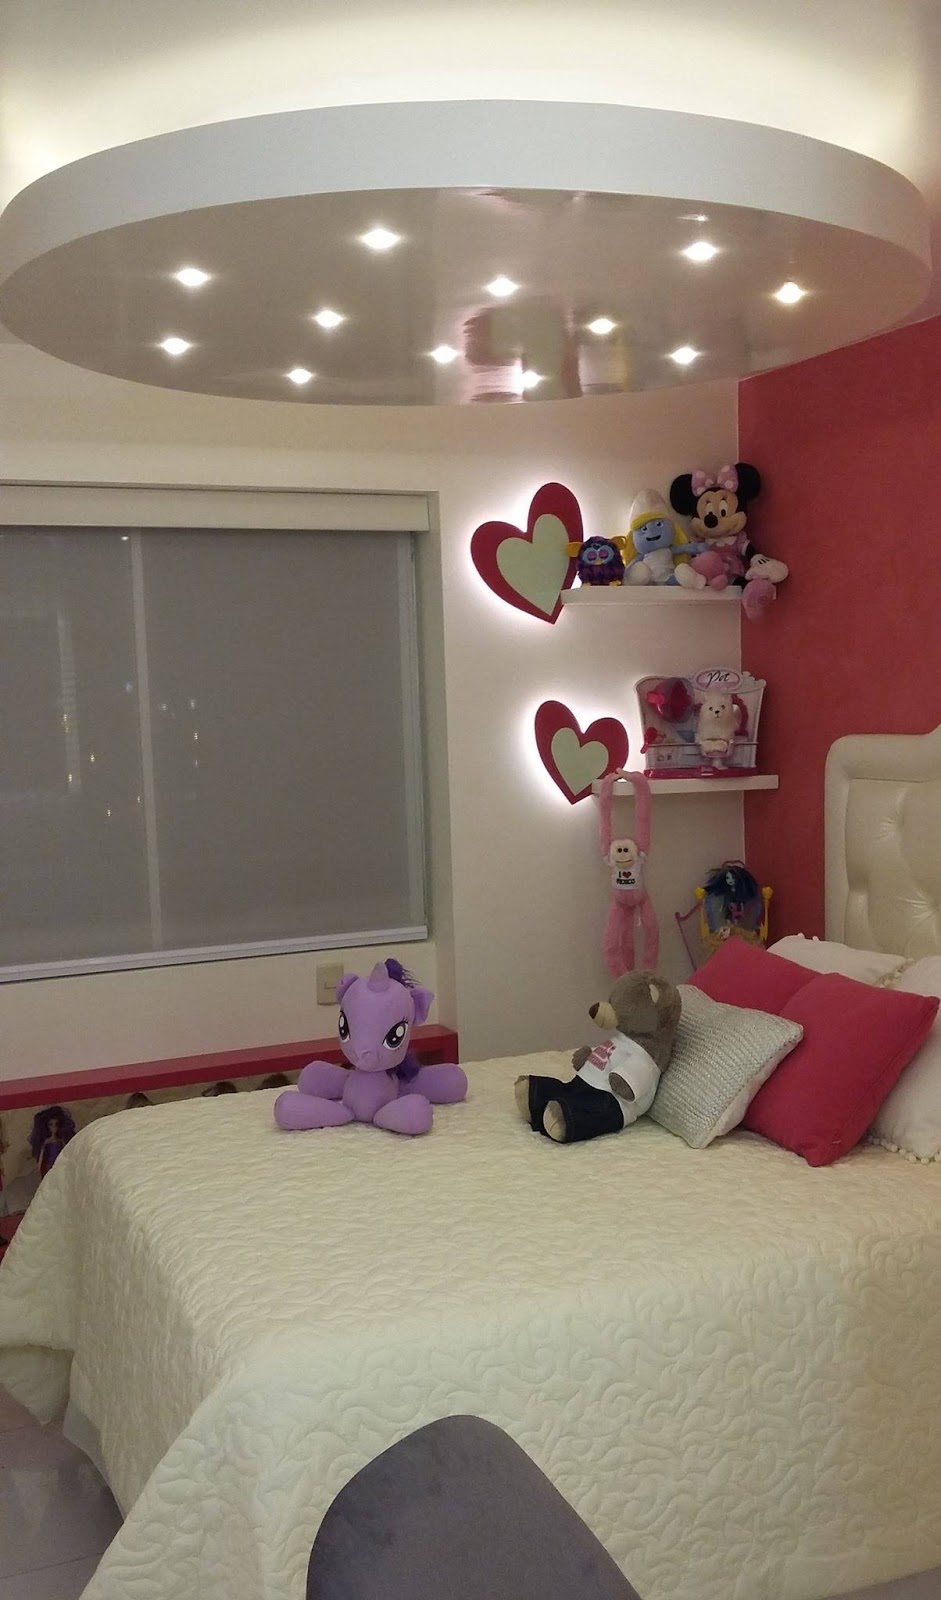 DORMITORIOS: decorar dormitorios fotos de habitaciones recámaras diseño